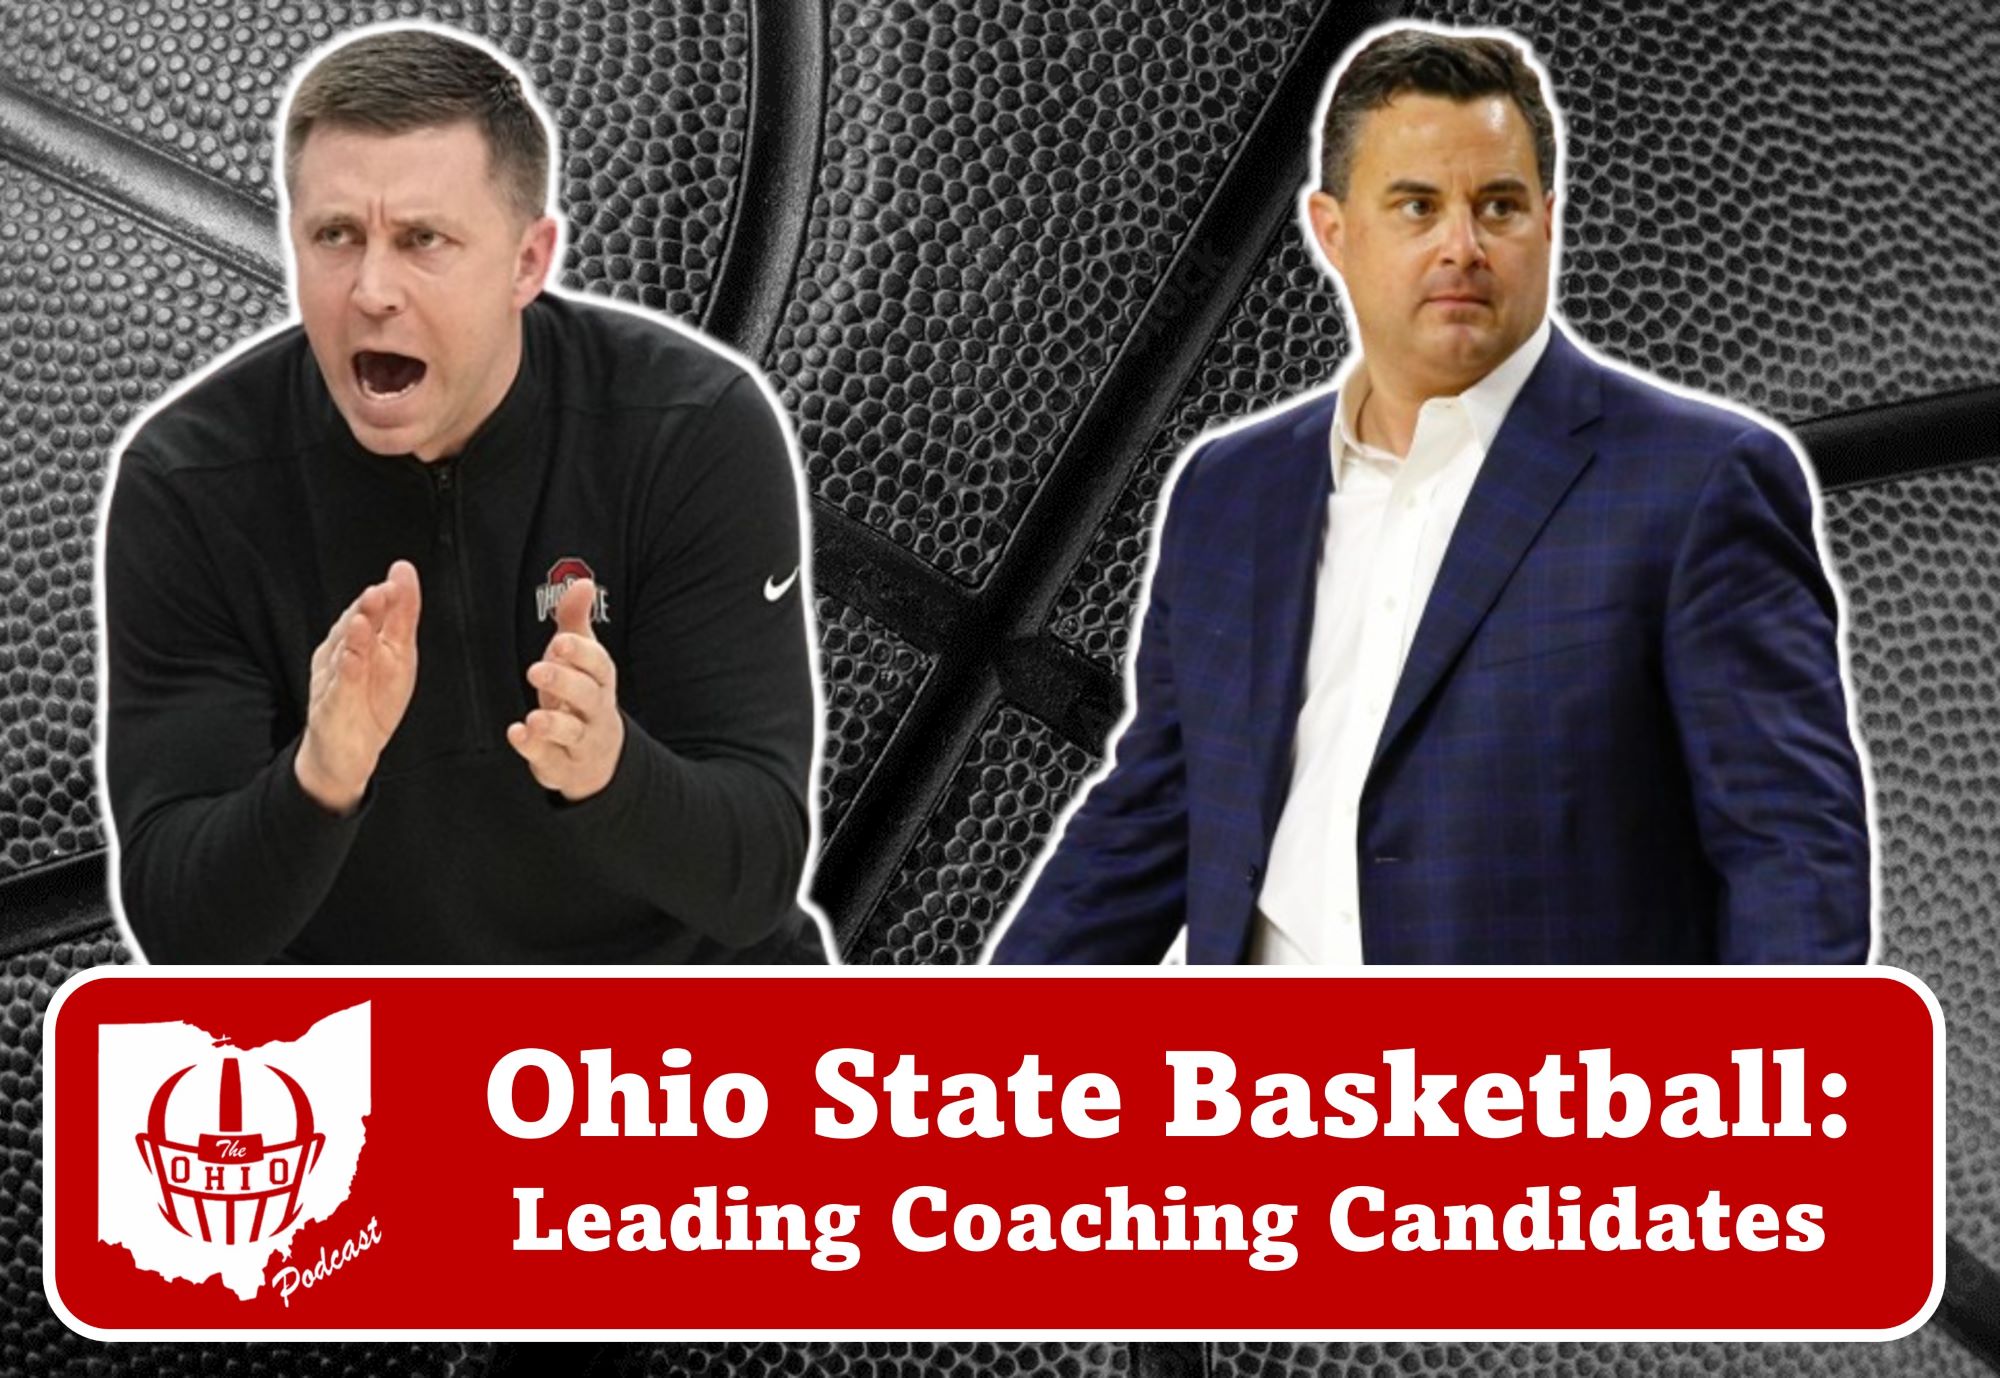 Ohio State Basketball's Leading Coaching Candidates